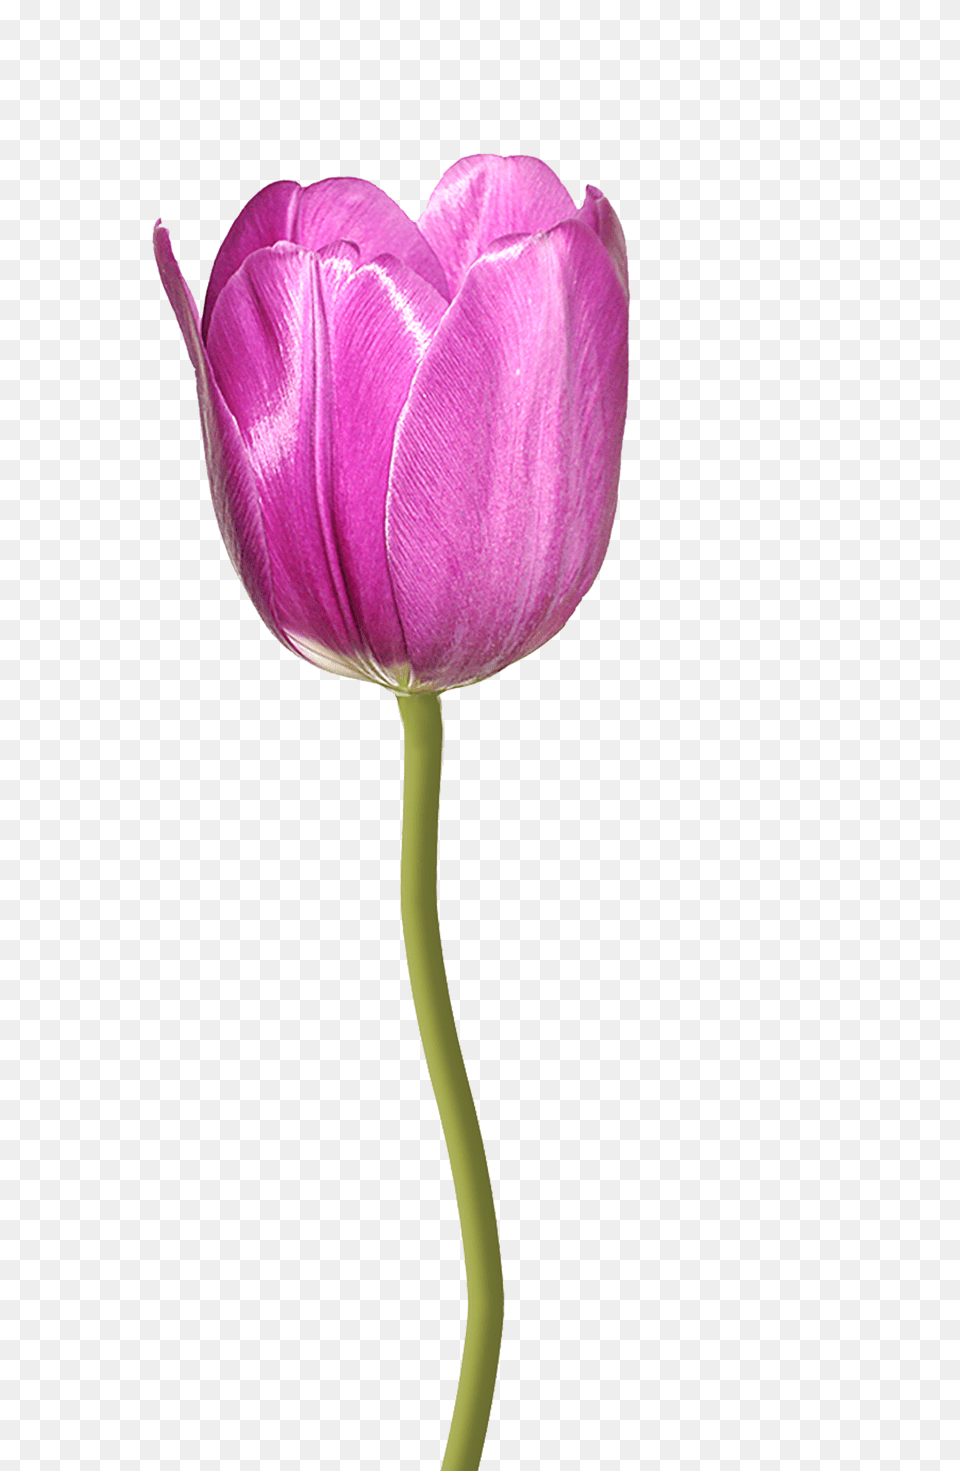 Tulip Flower, Plant, Petal Free Transparent Png